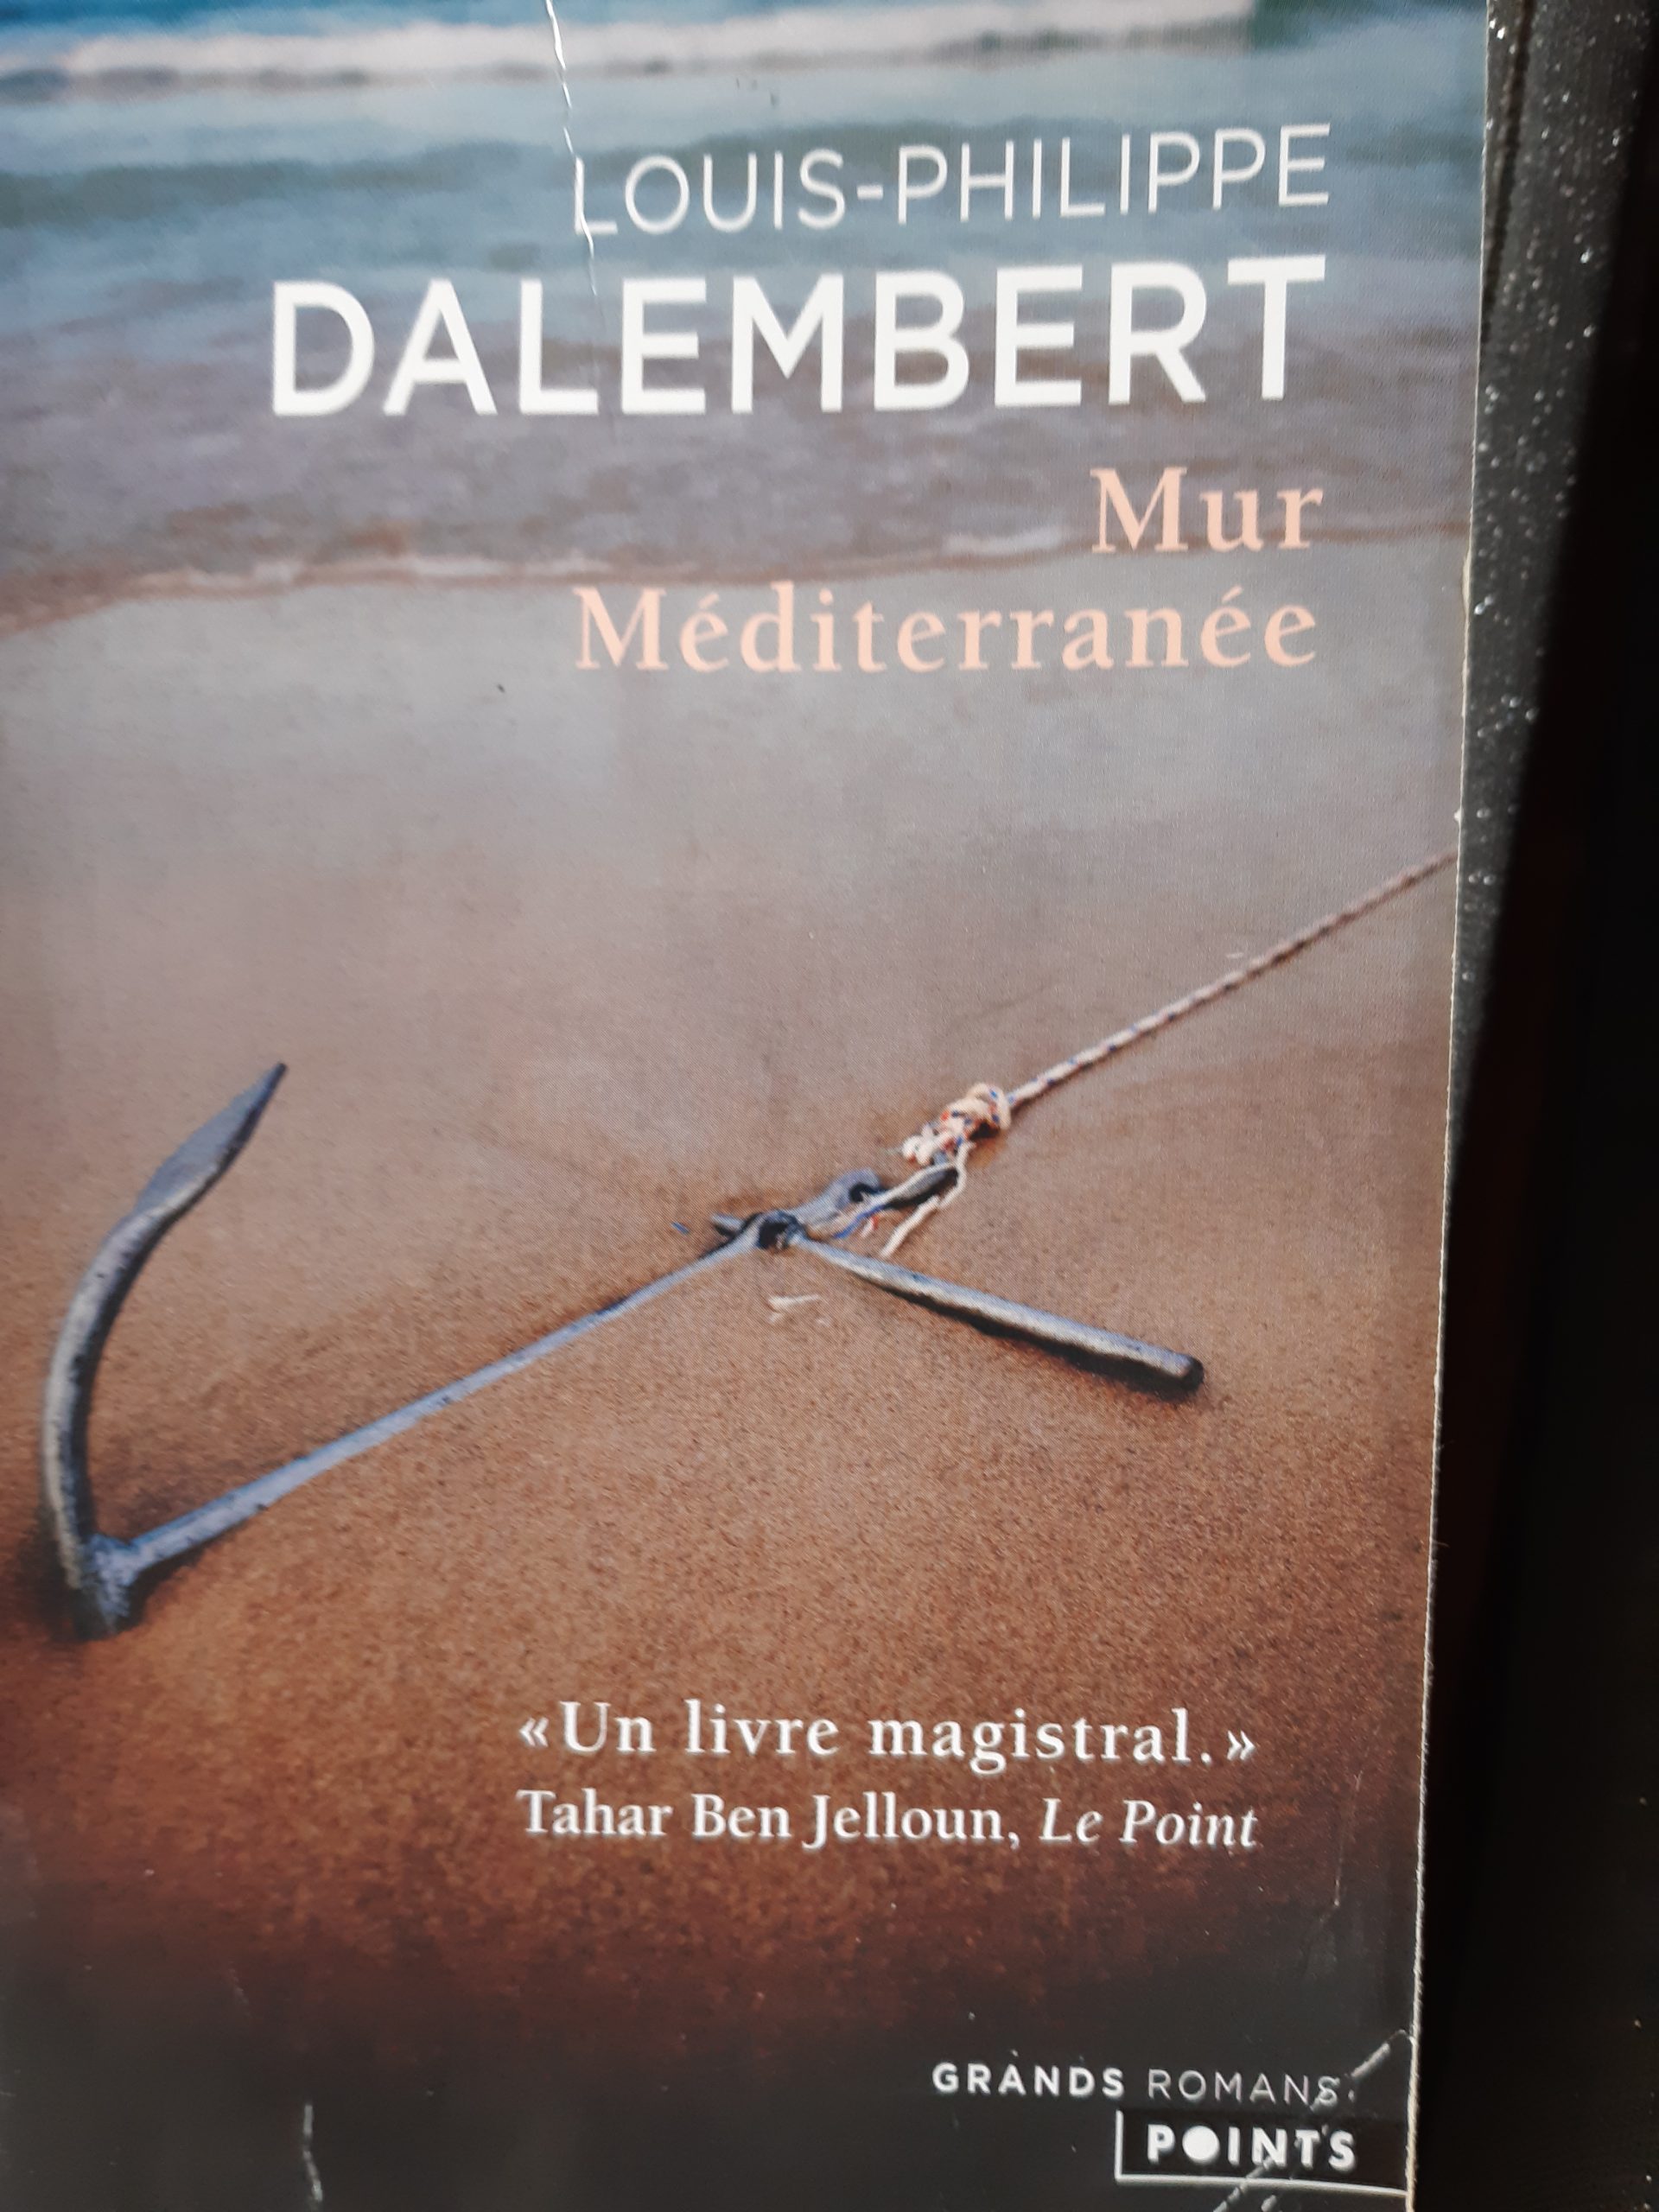 « Mur Méditerranée ». Un livre pour motiver à l’accueil